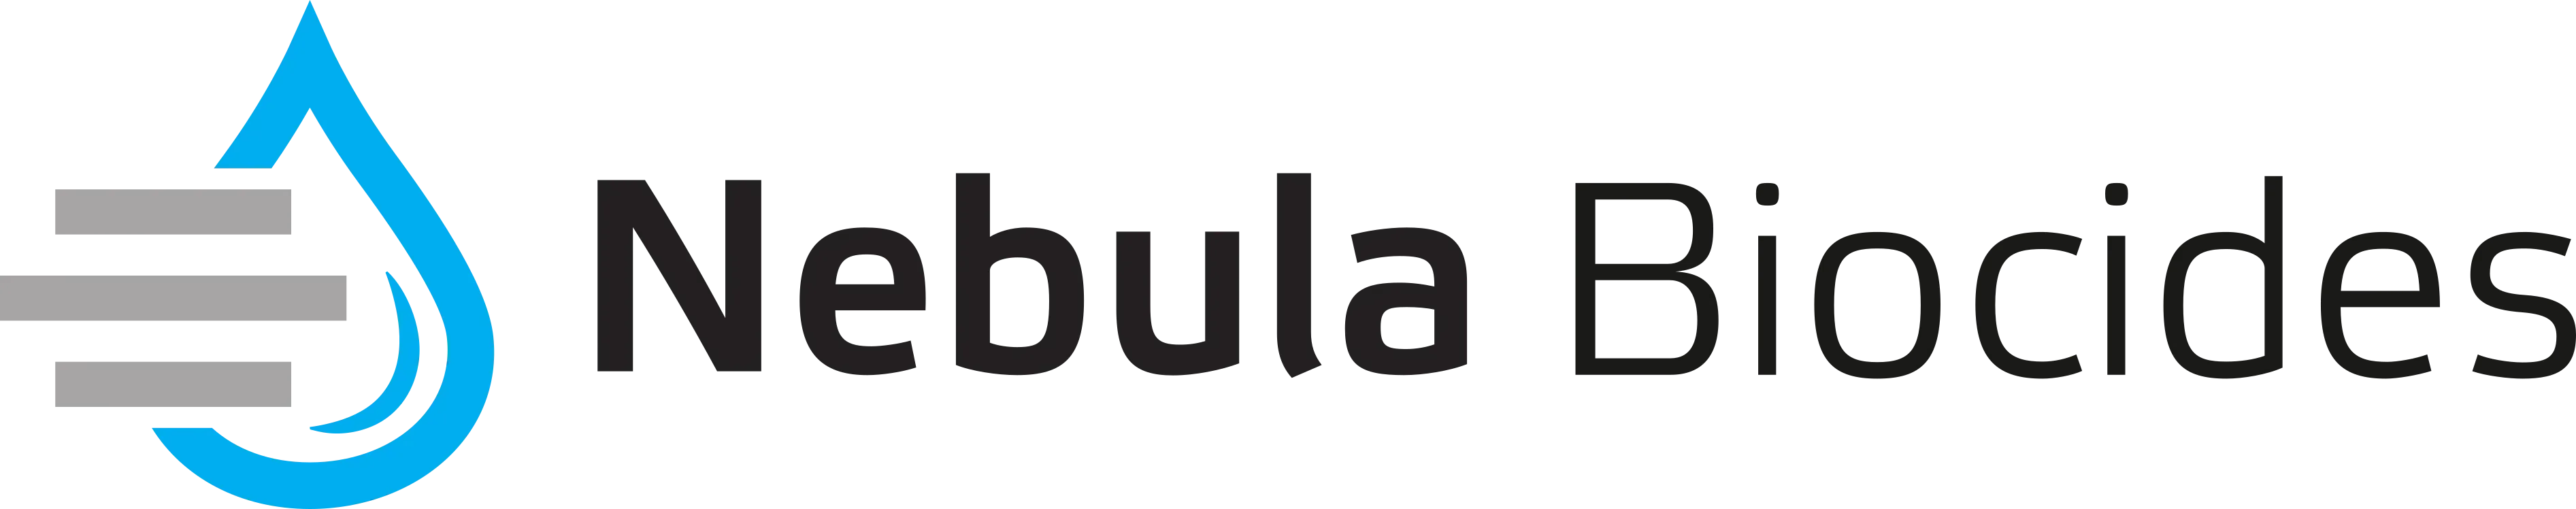 Nebula Biocdes GmbH Logo